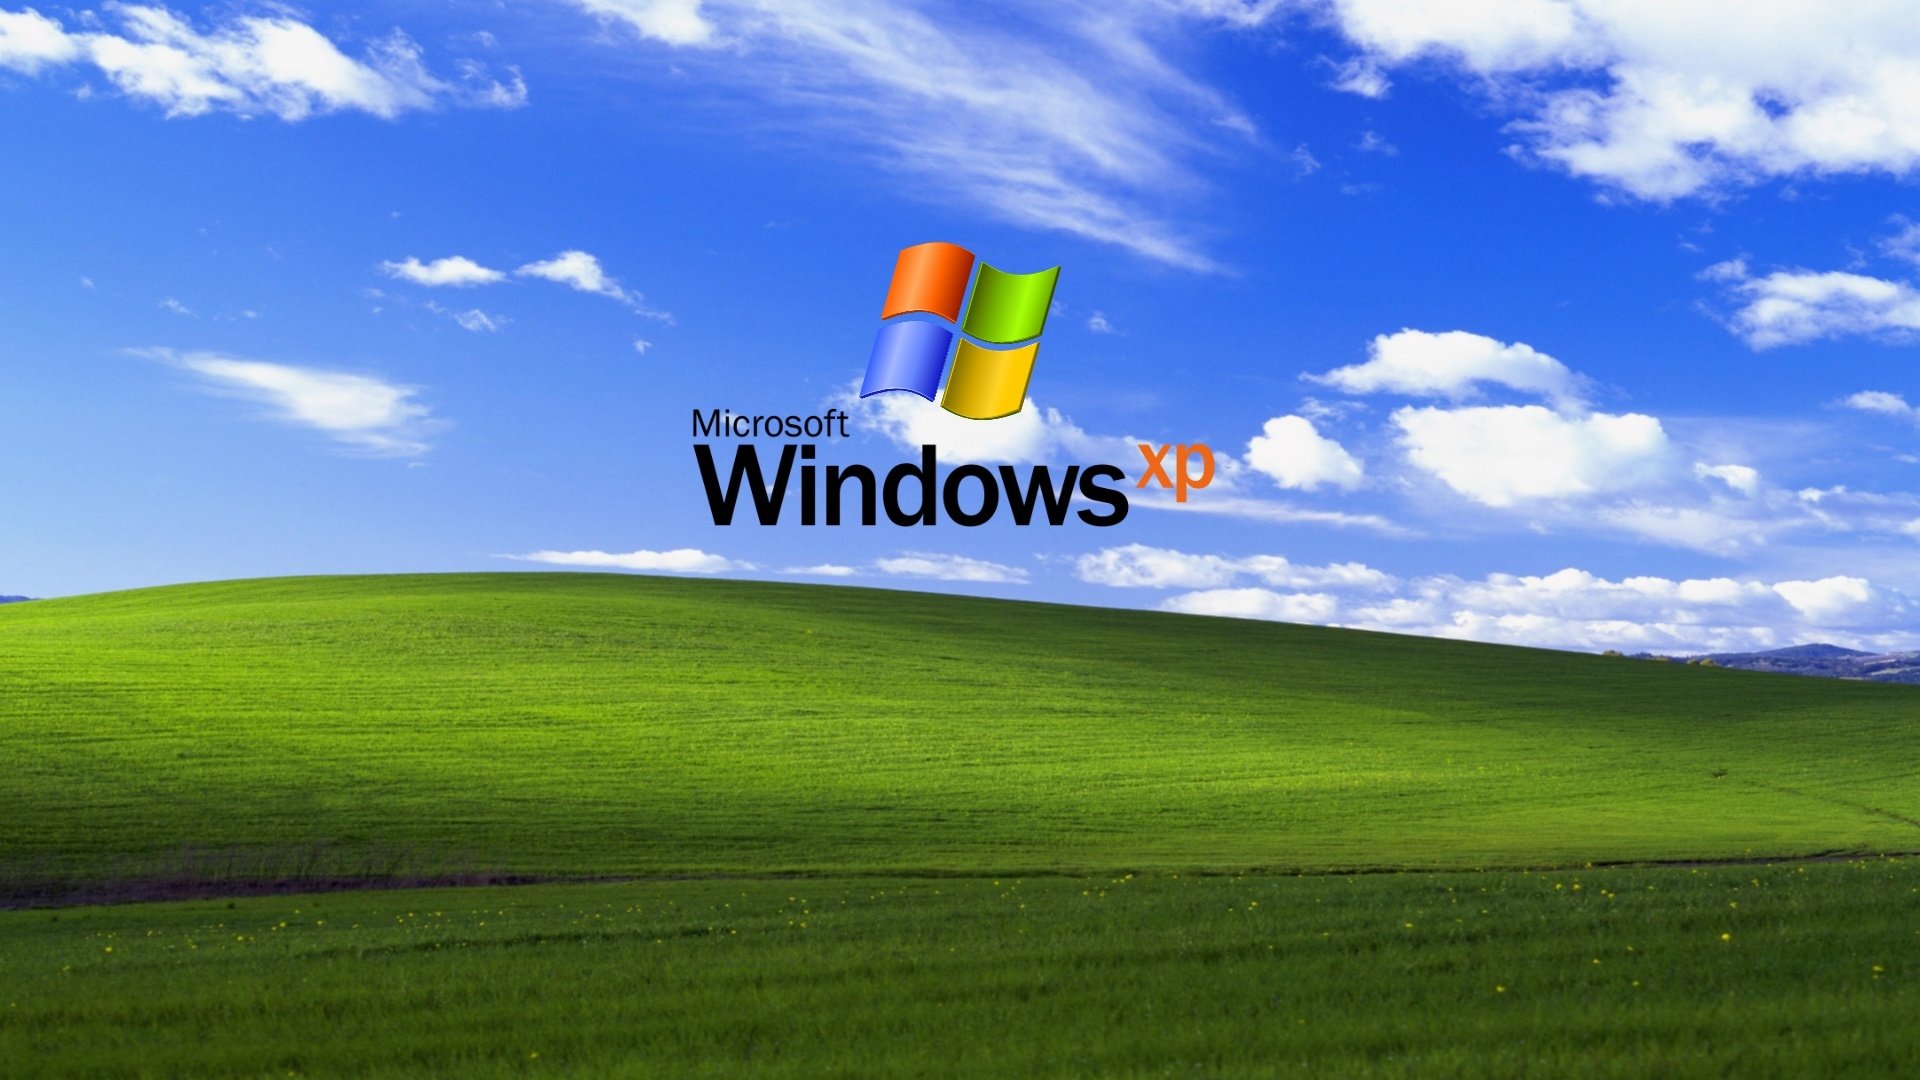 Mời bạn tải về 3 bộ hình nền độc đáo dành cho máy tính từ Microsoft